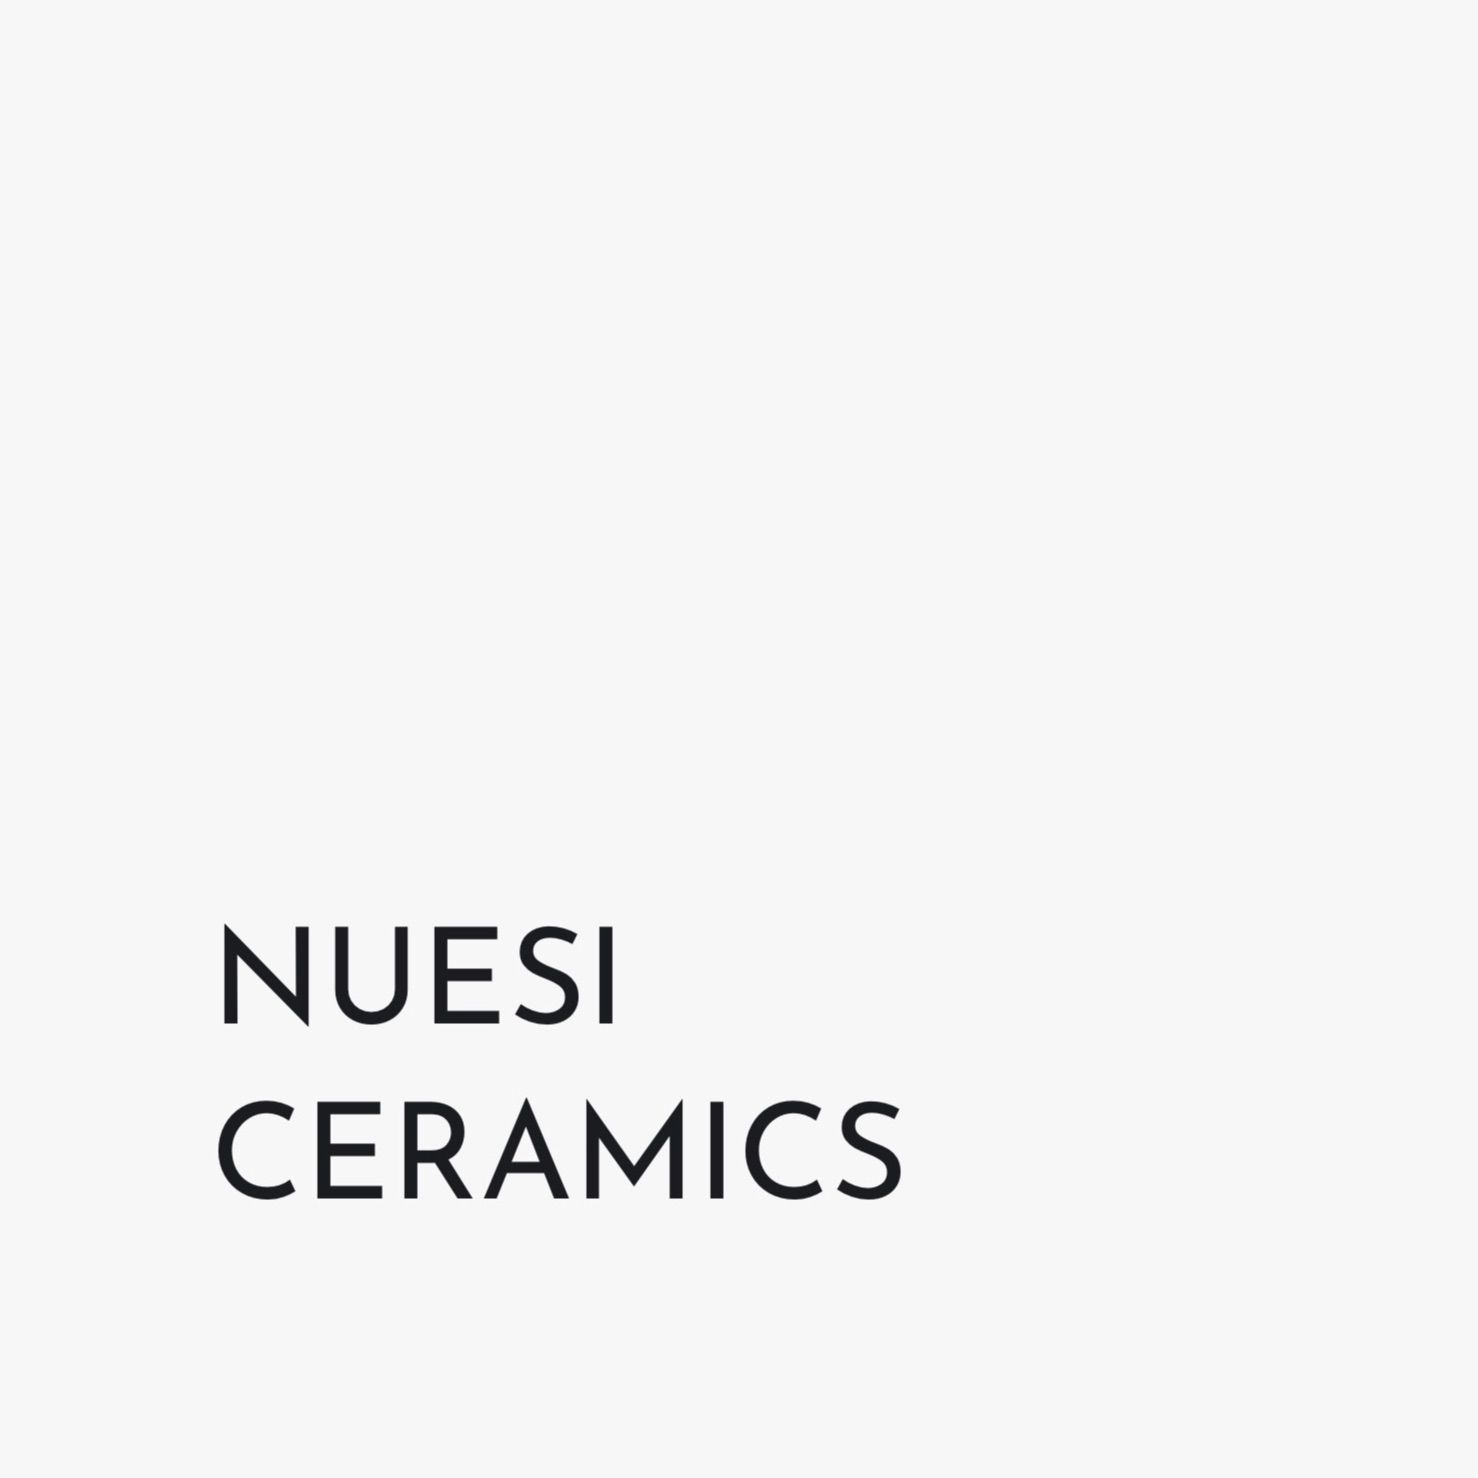 Nuesi ceramics, Carrer de València, 281, 08009, Barcelona